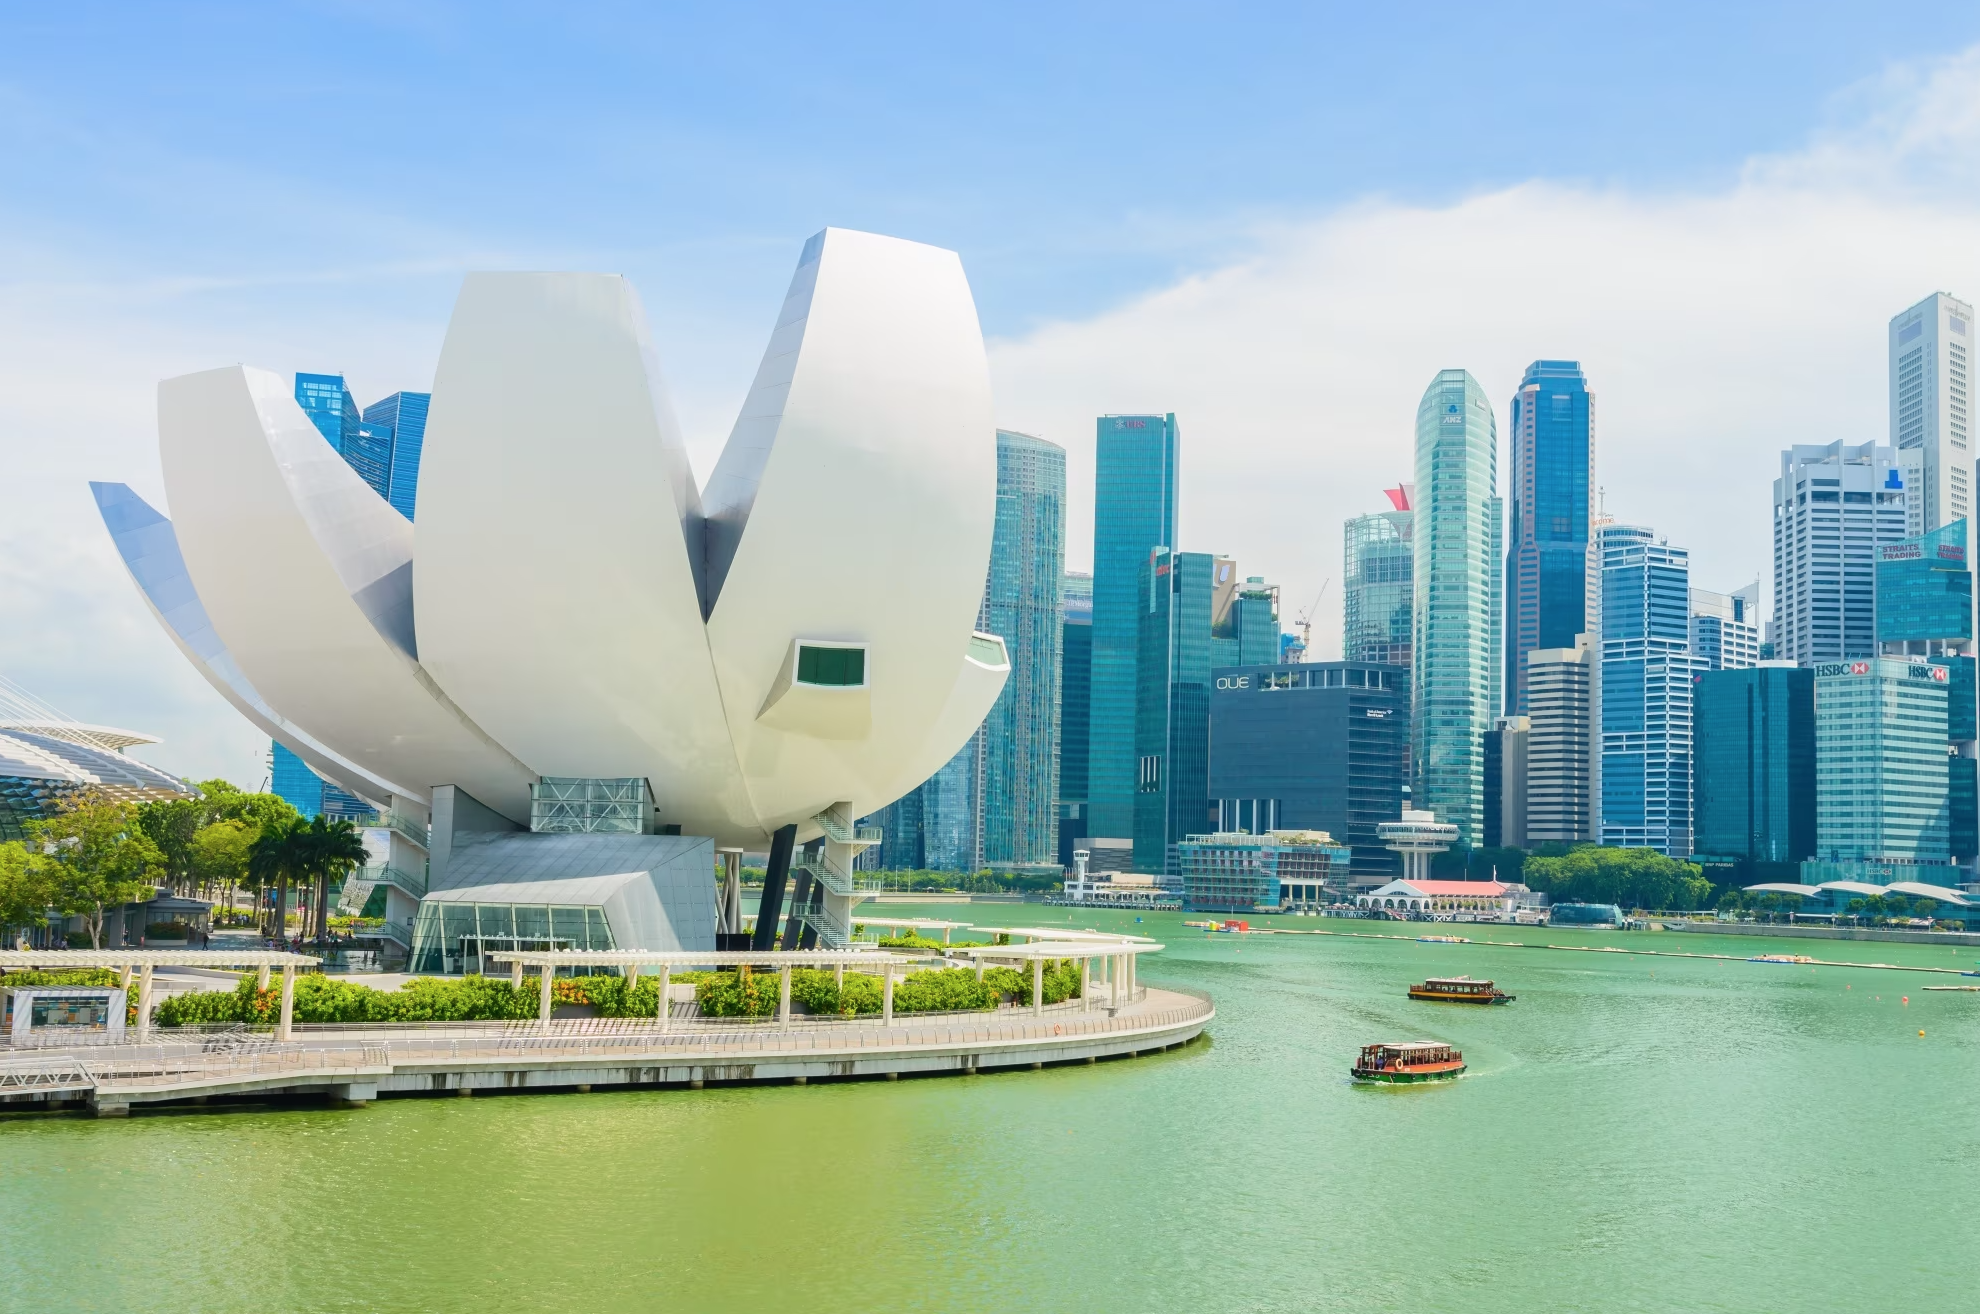 Team Building in Singapore: Unite, Inspire, Grow